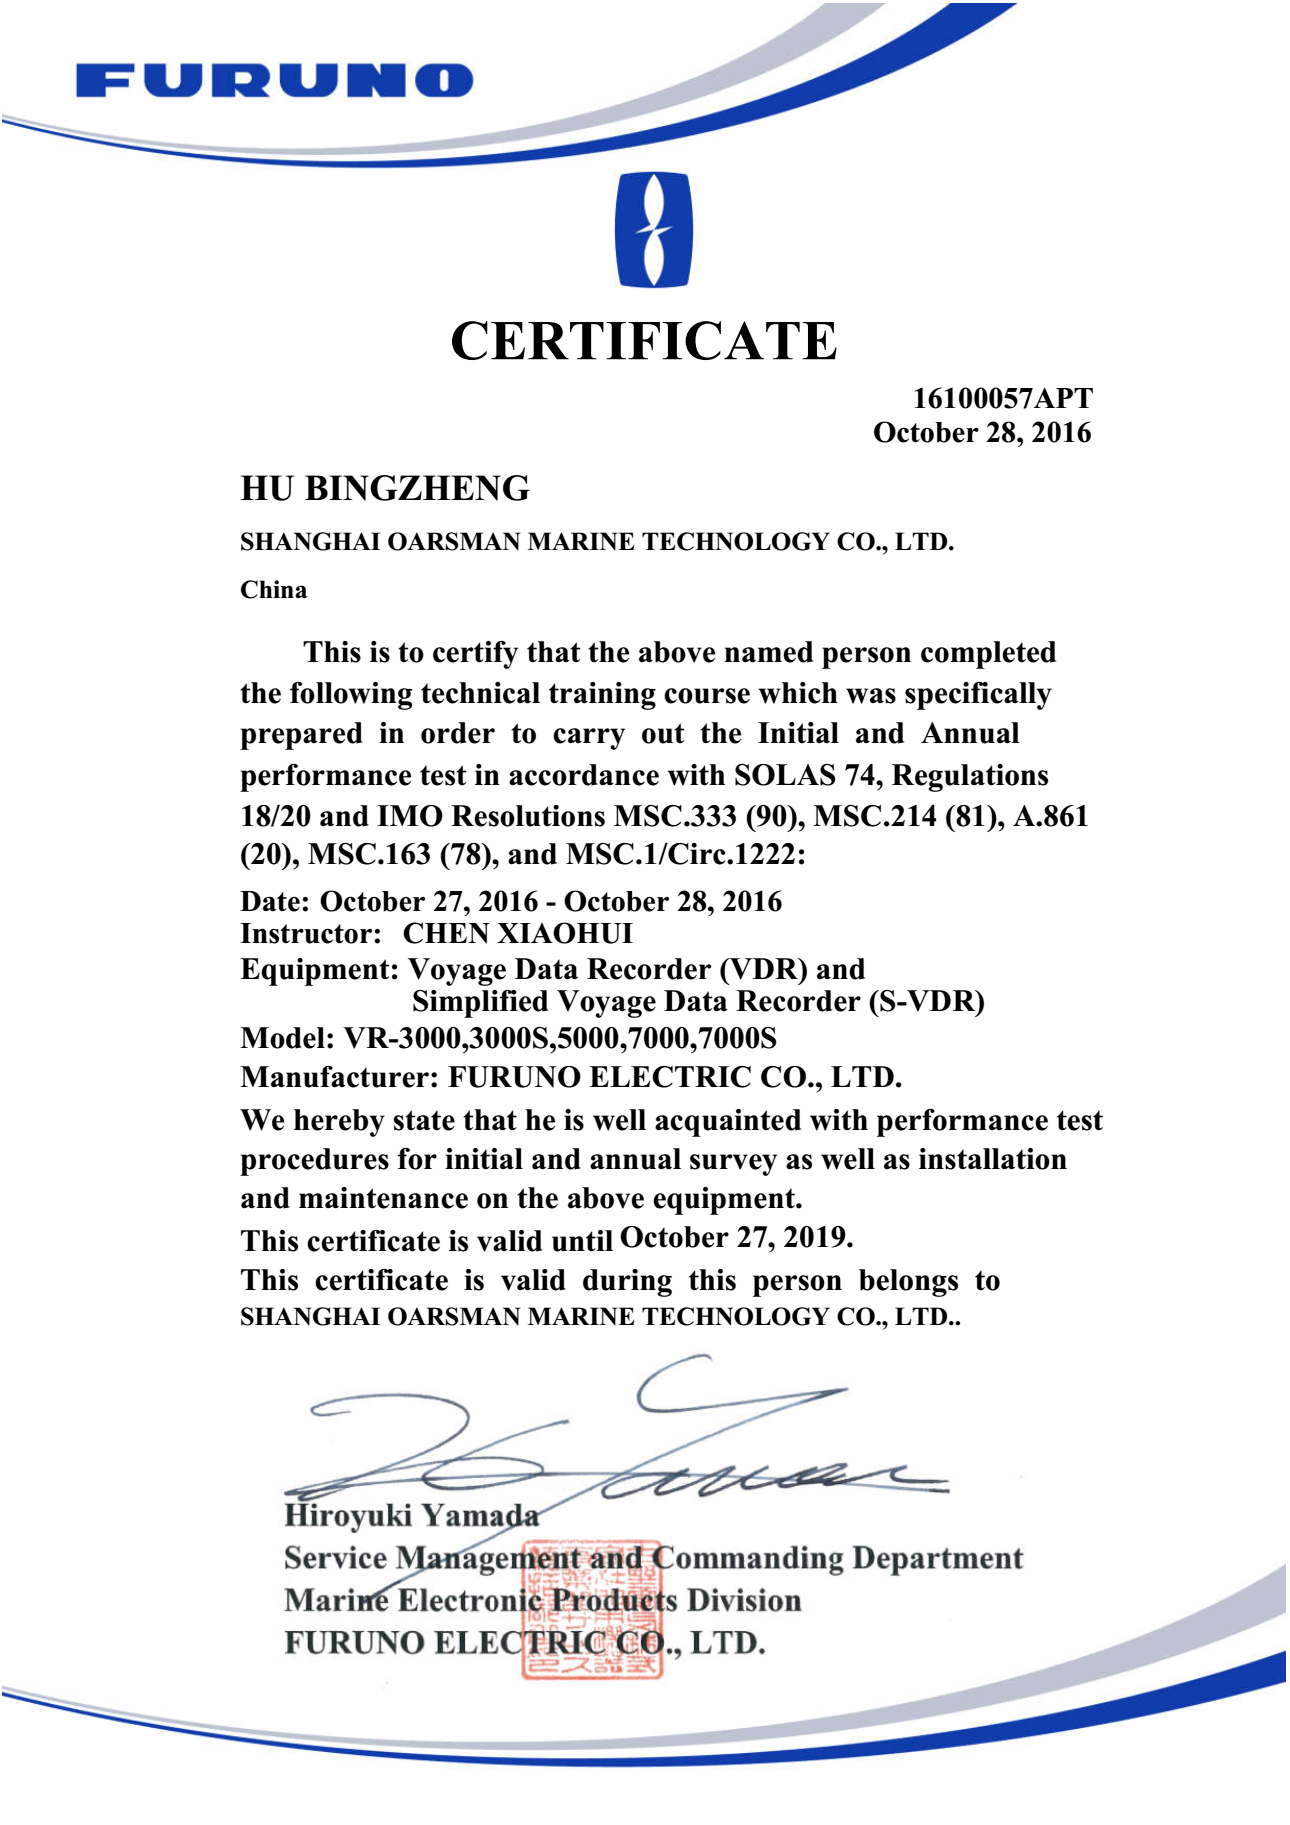 Furuno certificate